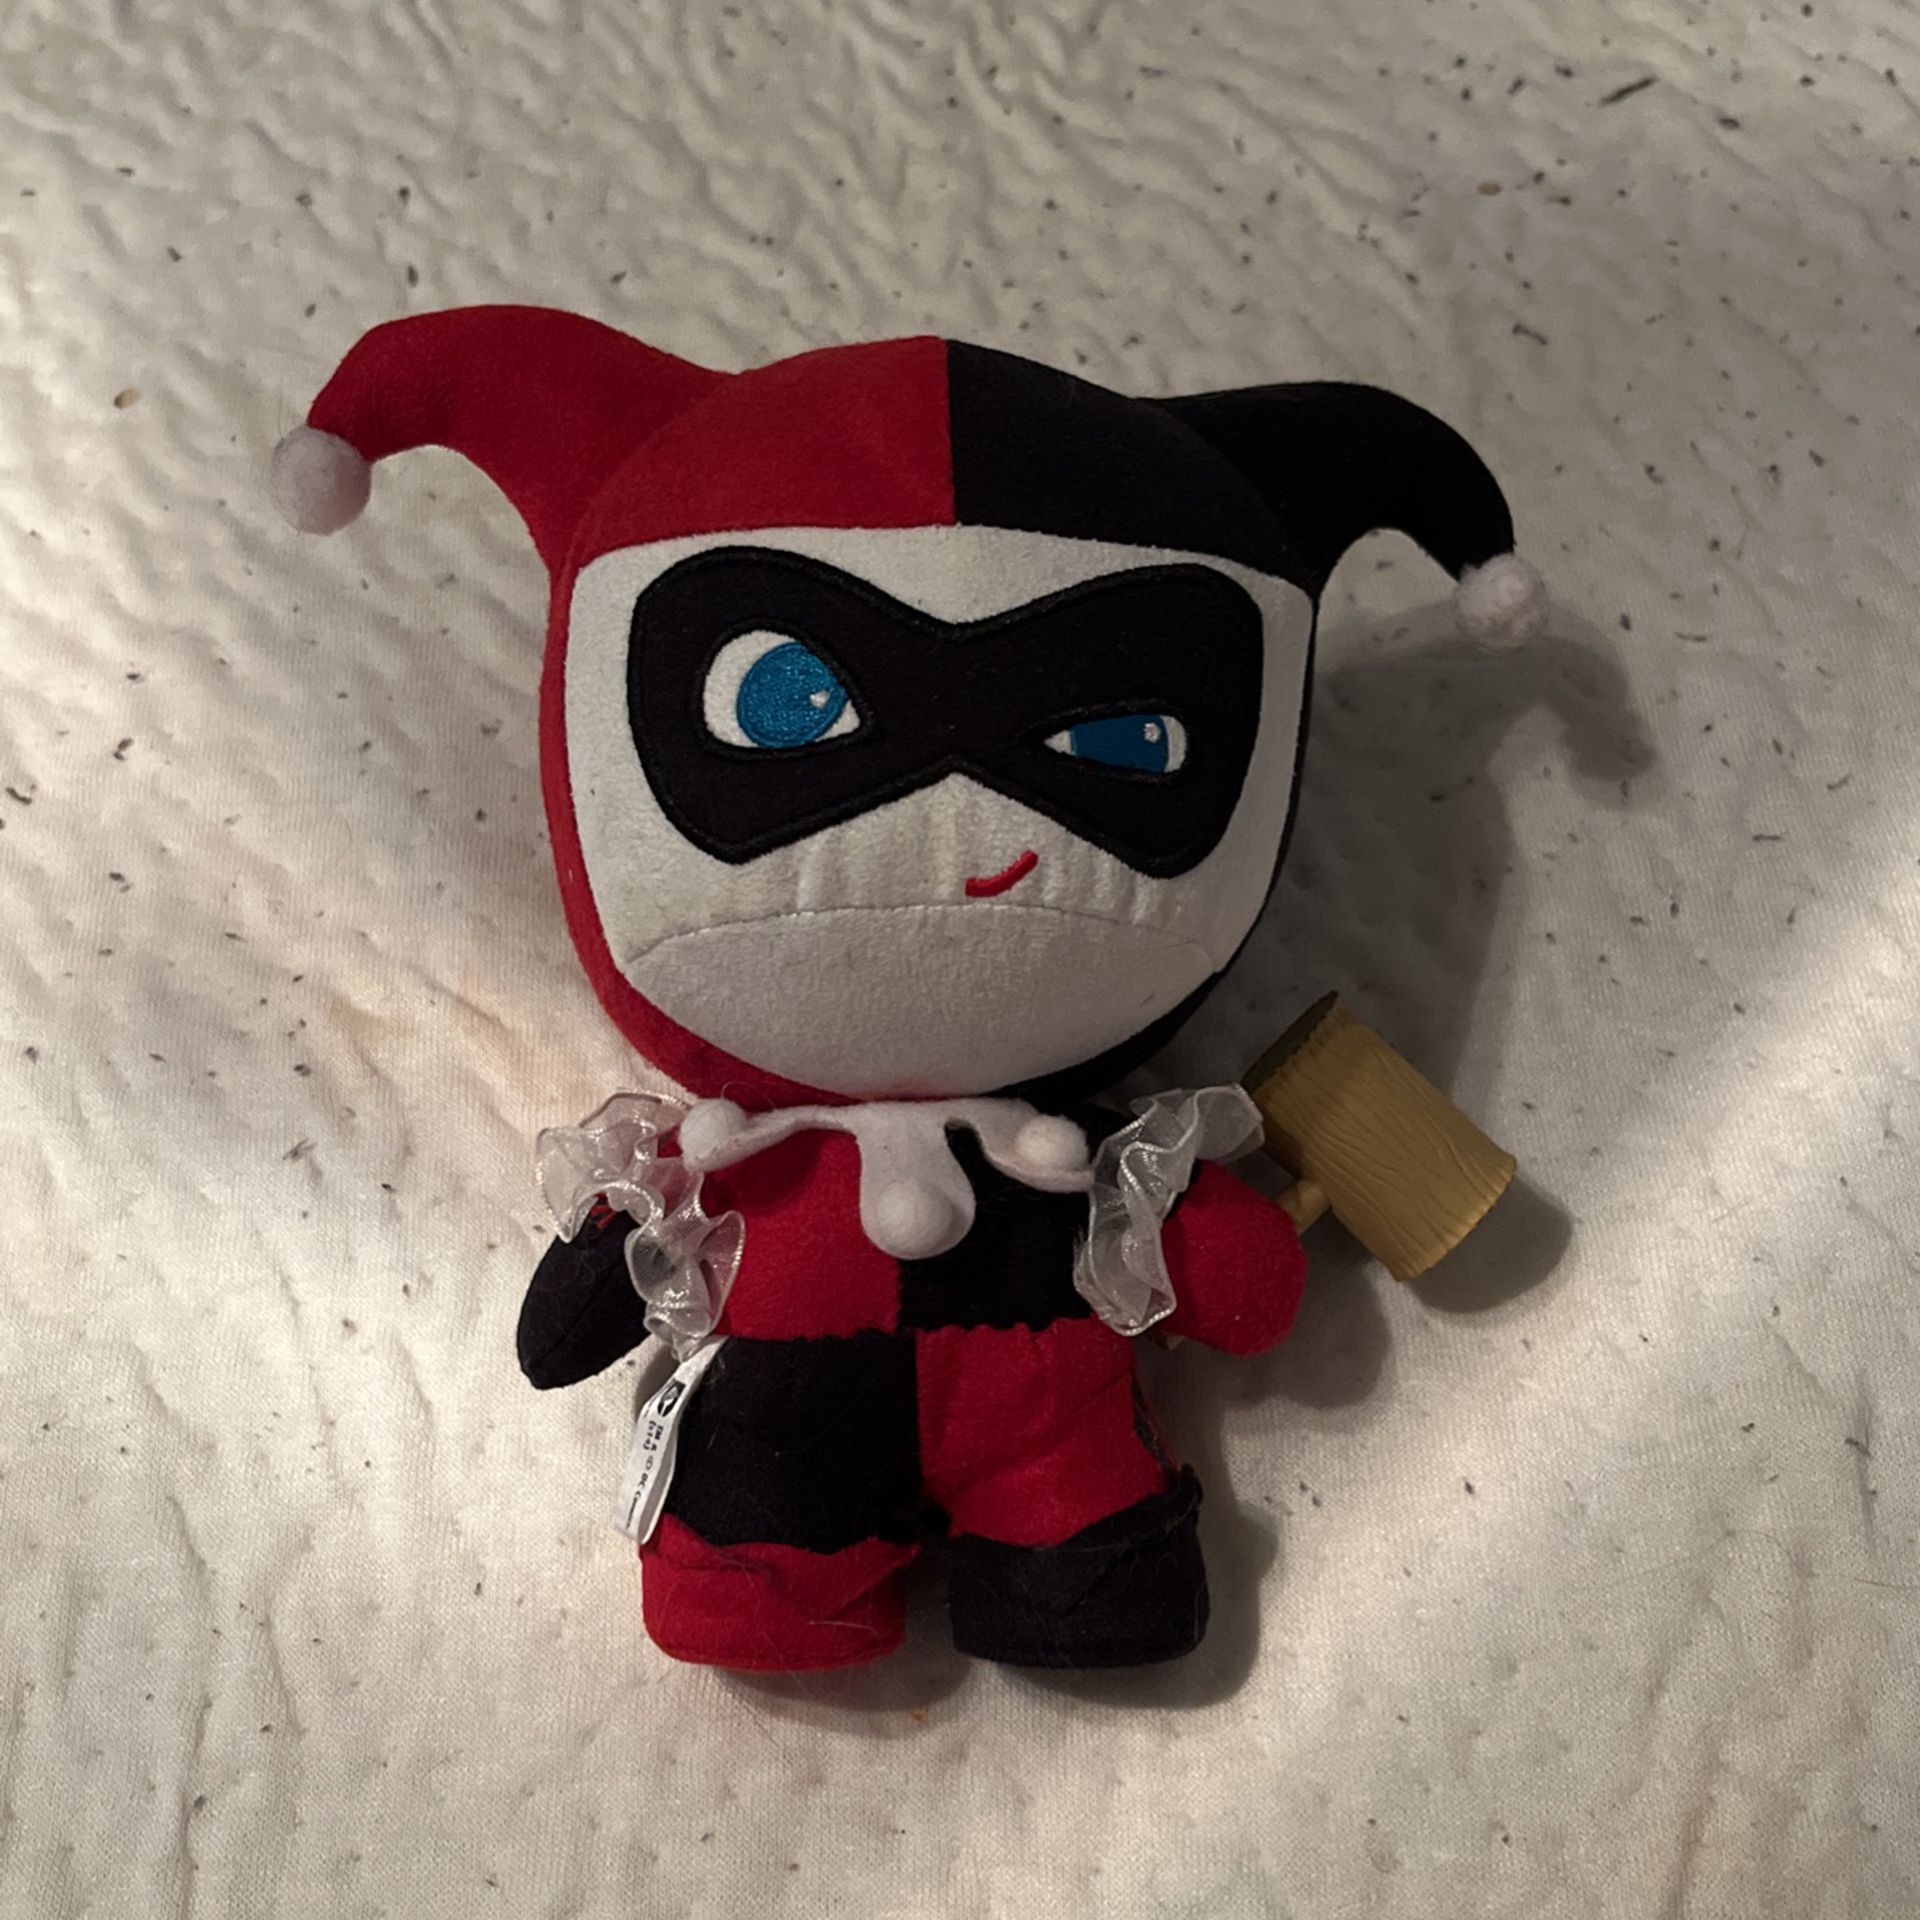 Harley Quinn Toy